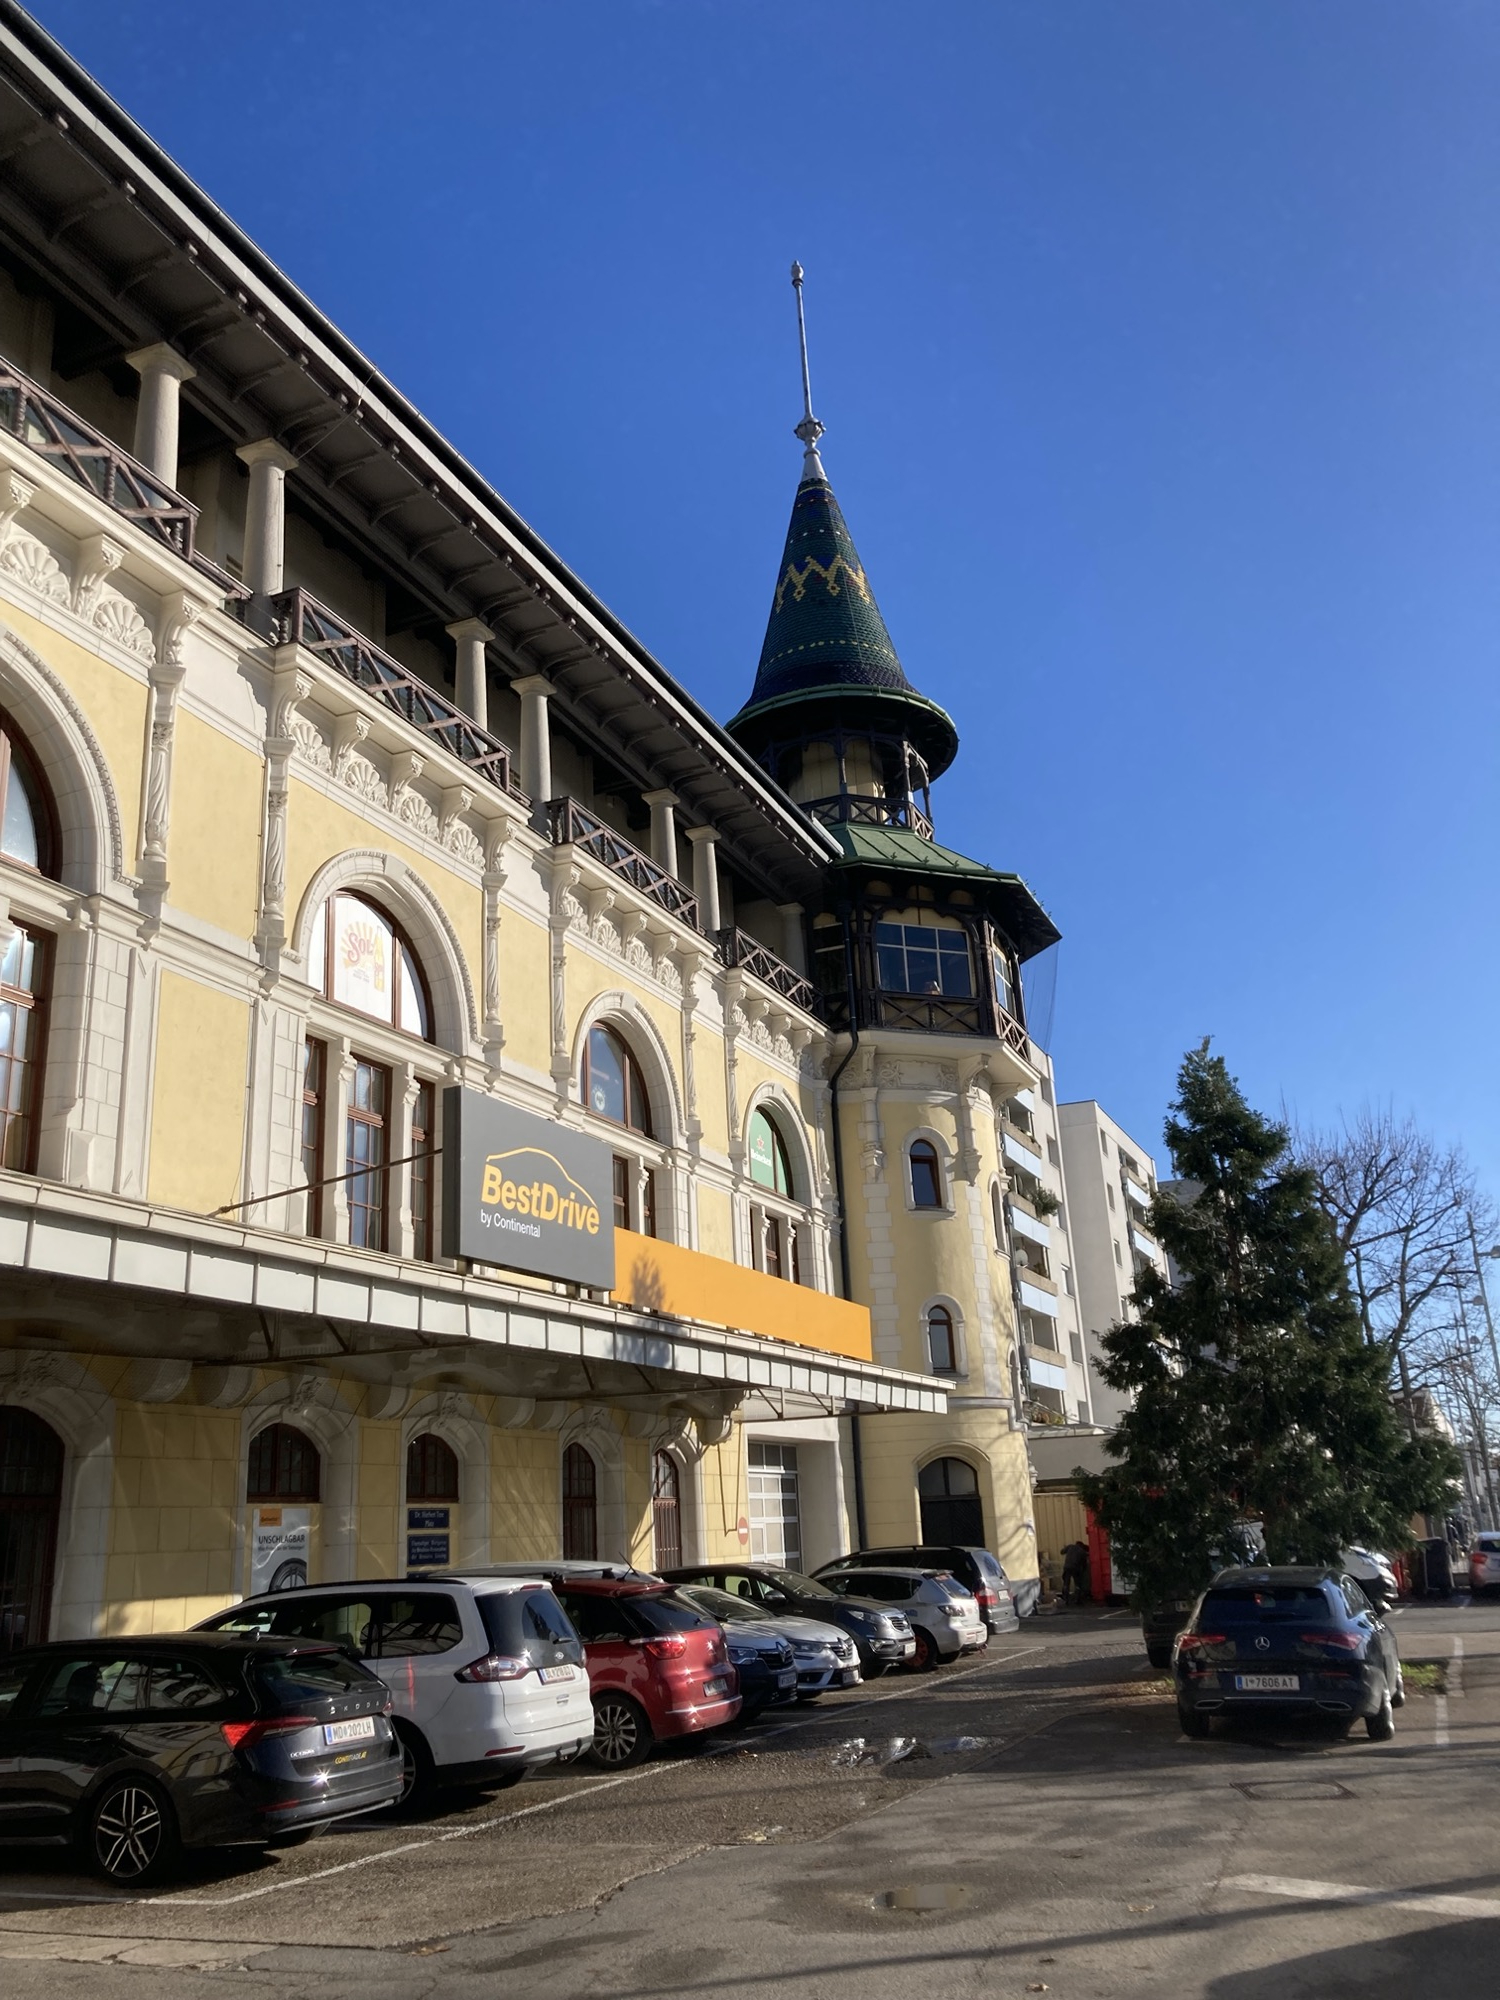 Vorderseite des ehemaligen Gebäudes der Brauerei Liesing, gelbe Fassade mit weißen Verzierungen und einem Eckturm mit Erker, Balkon und dekoriertem Dach